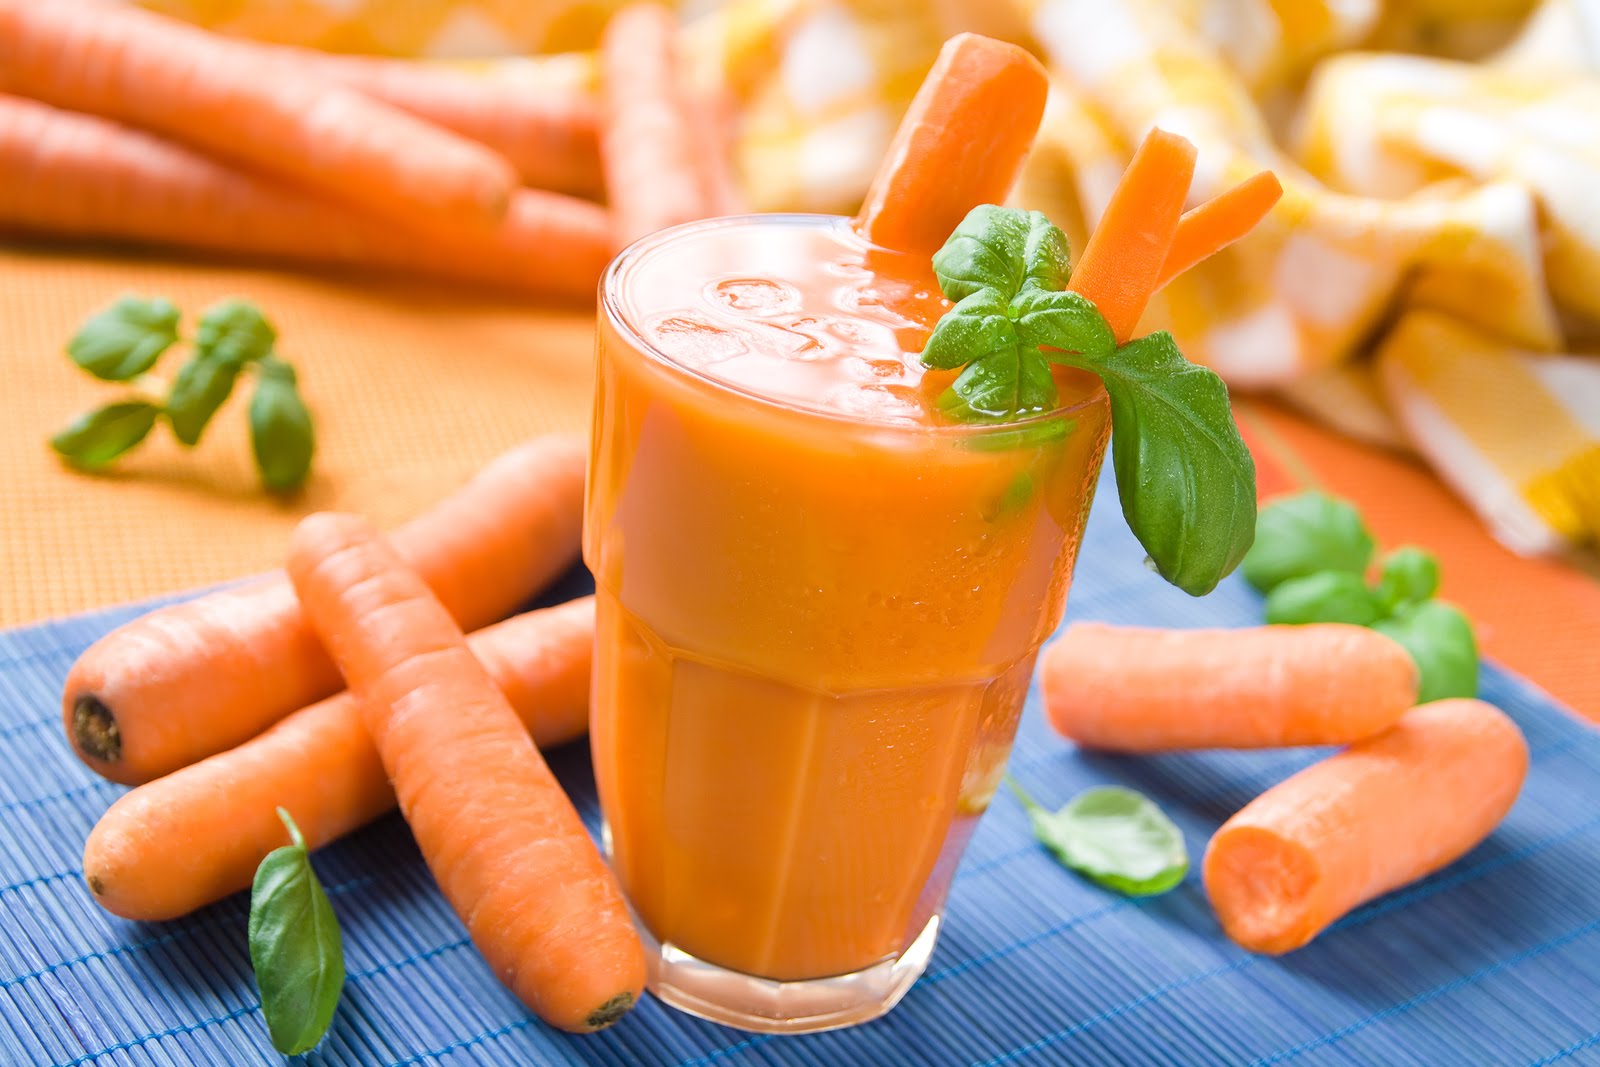 health benefits of carrot juice